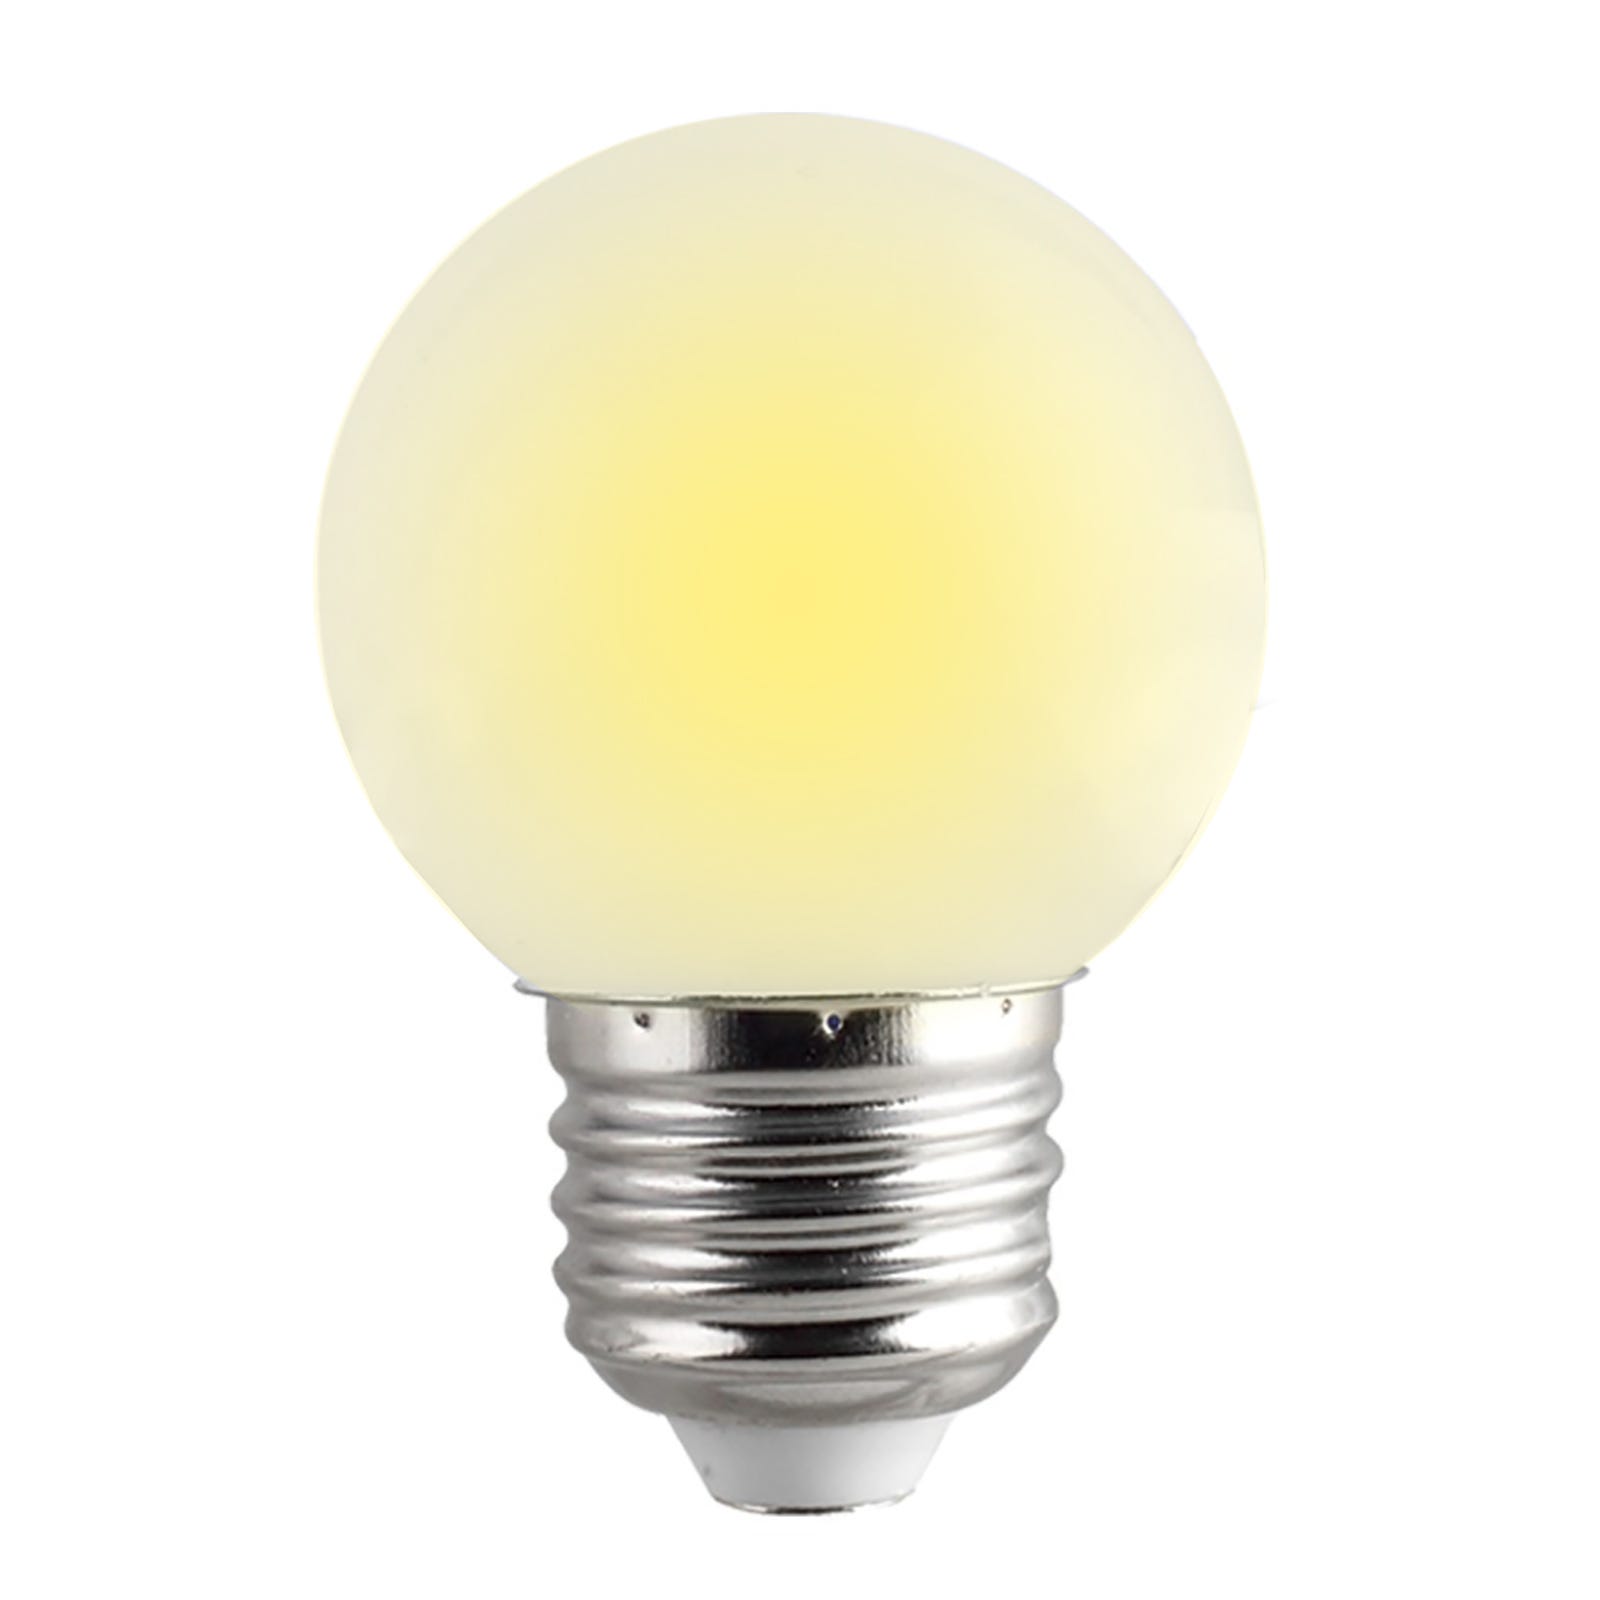 Ampoule LED E27 mini globe 230V lampe décorative LUMIÈRE CHAUDE